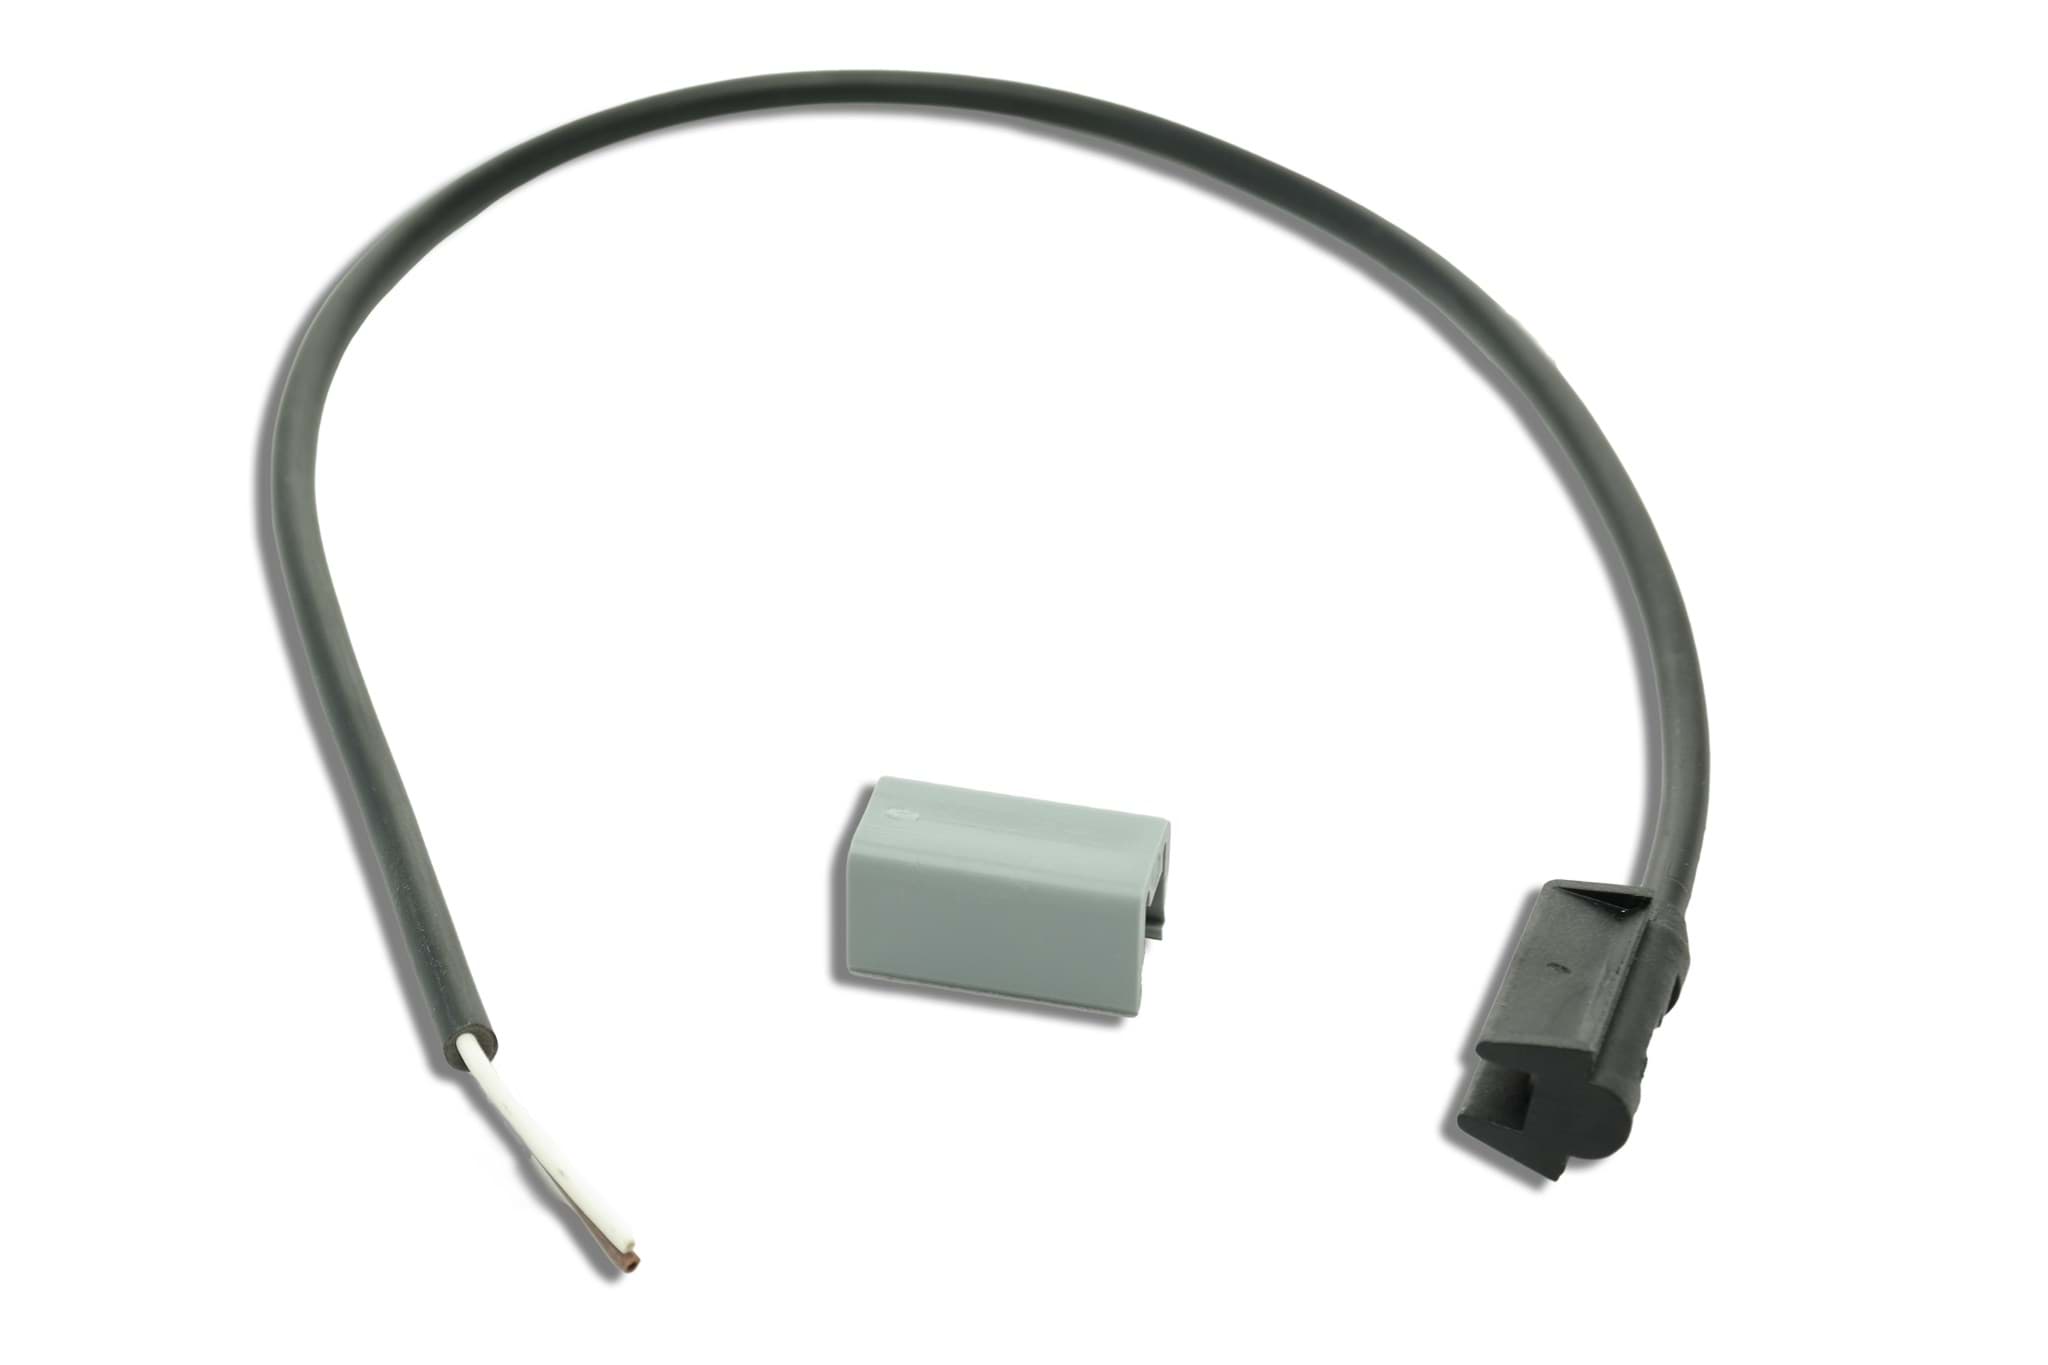 A.PiERiNGER. Adapter Kabel 1 m openEnd P&R Aspöck 68-5000-024